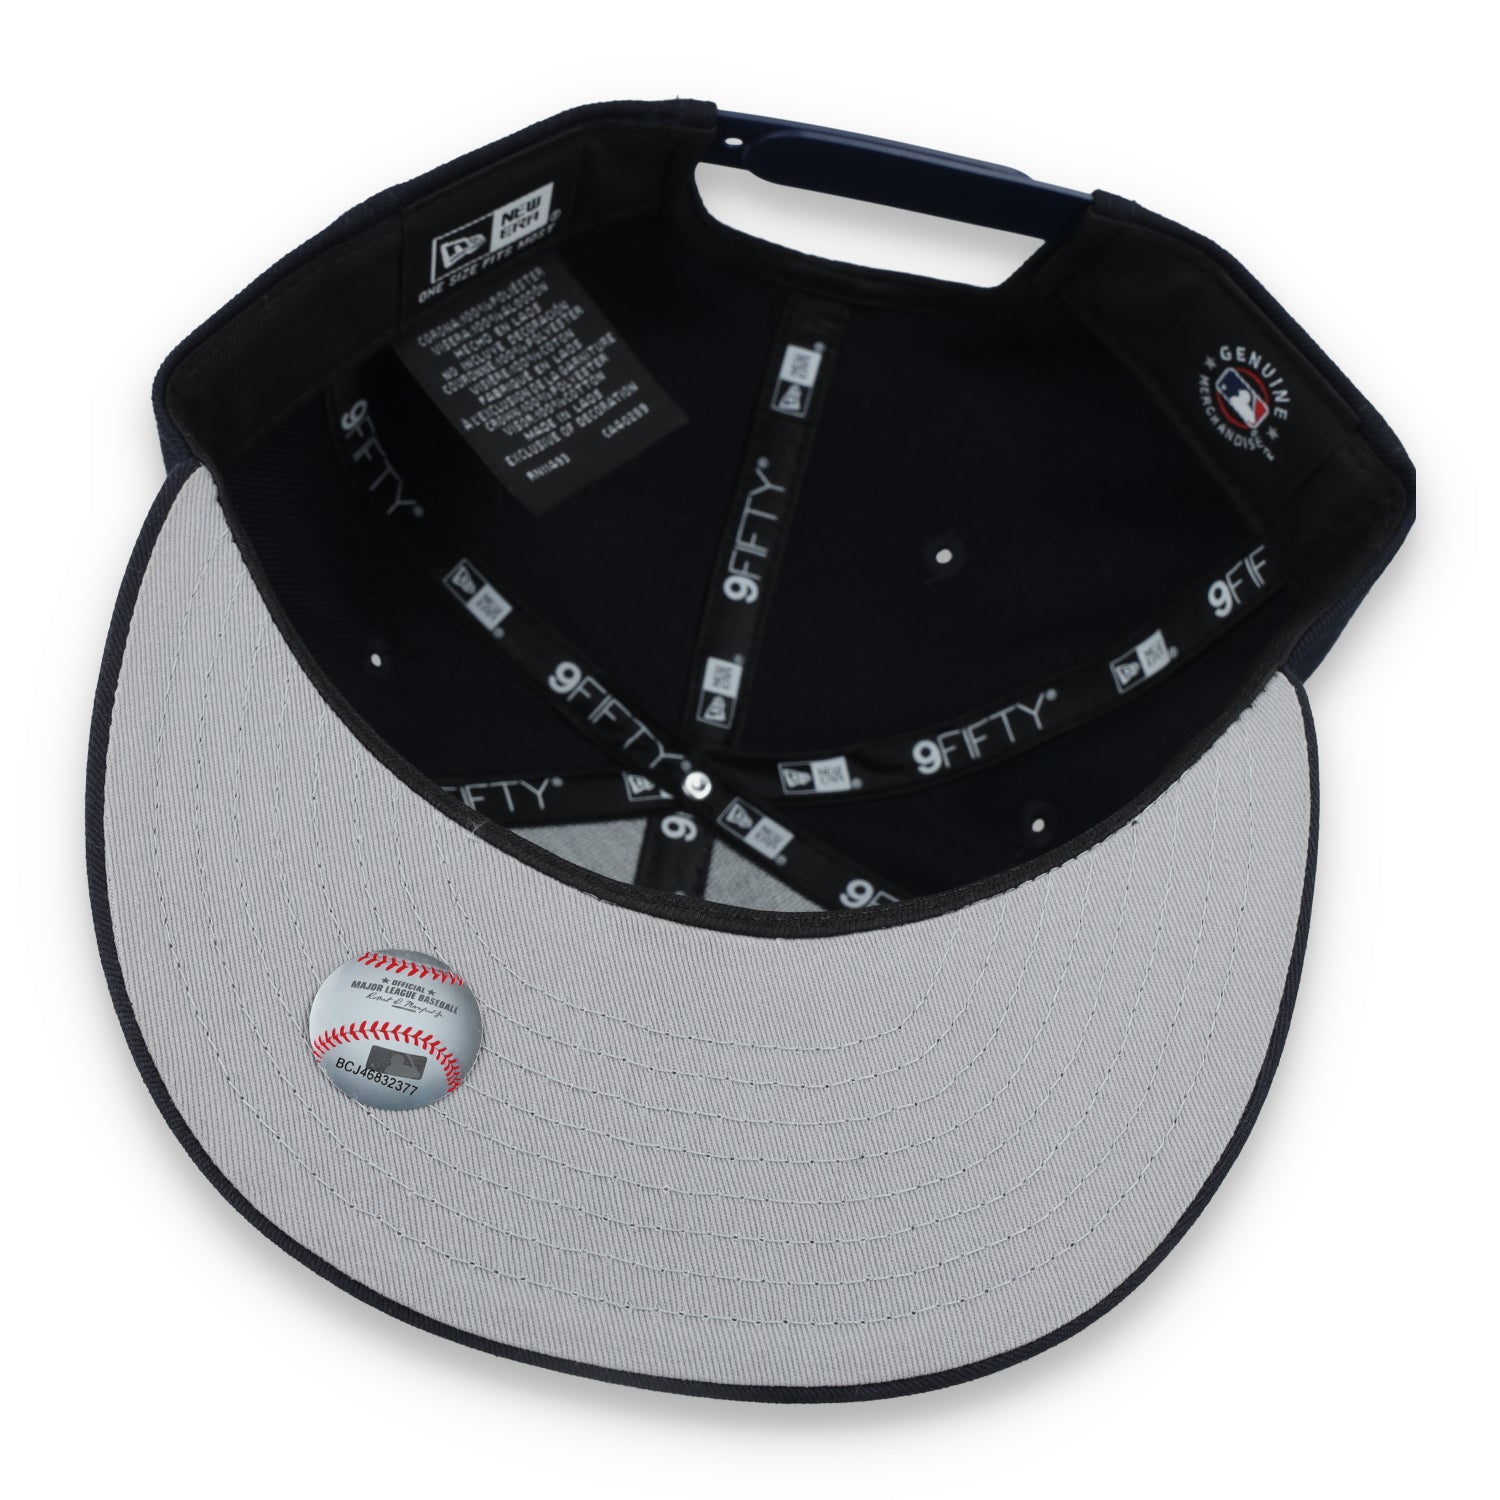 New Era Atlanta Braves On Field Alternative  9Fifty Snapback hat-Black/white